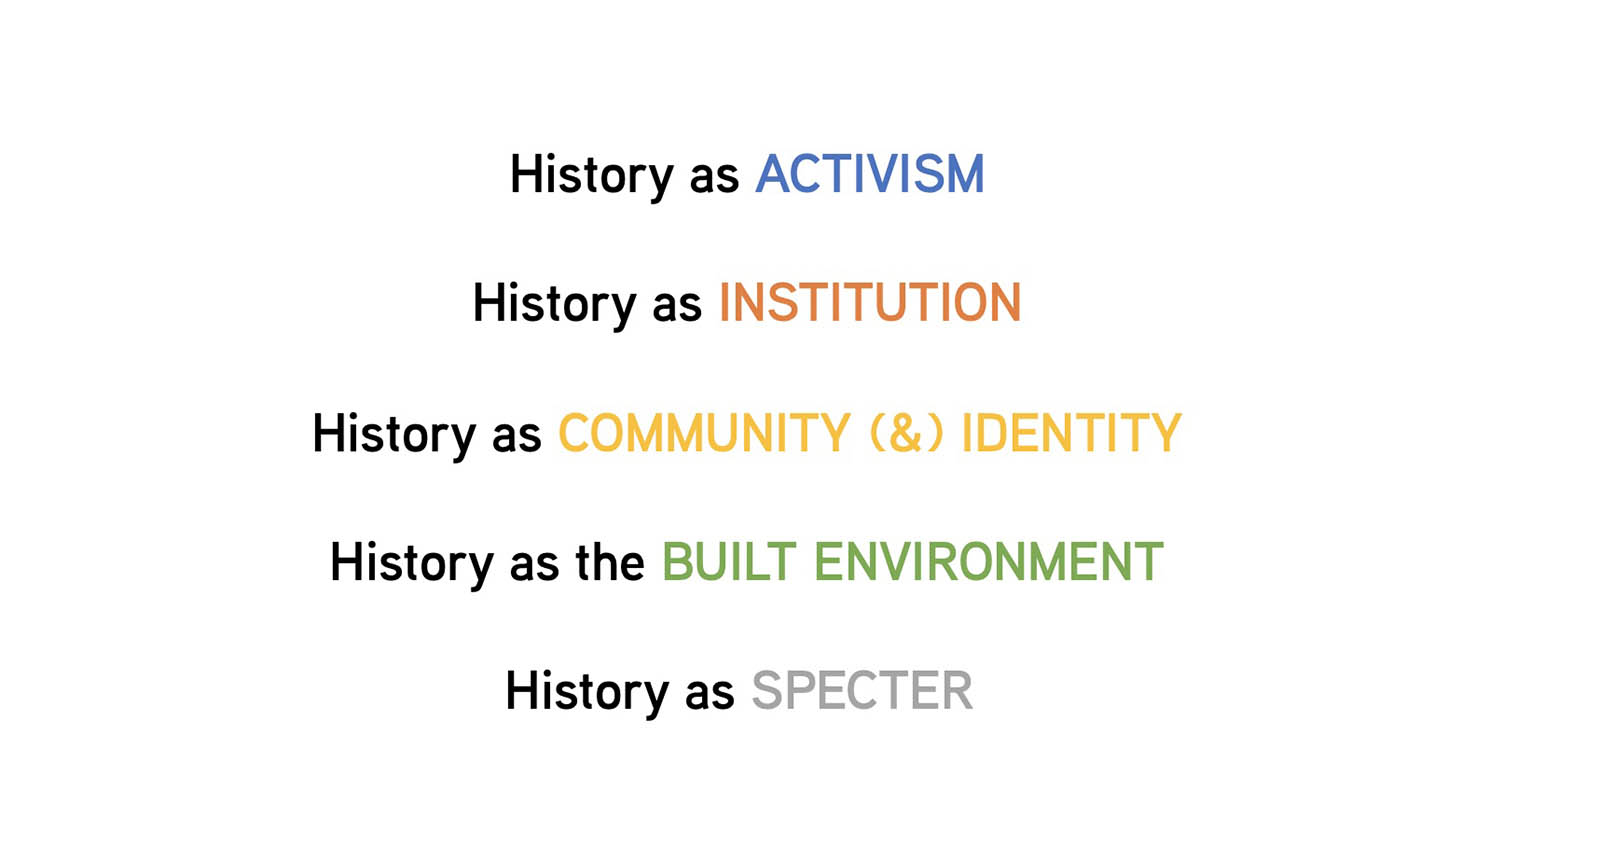 Five developmental categories of history in Pullman